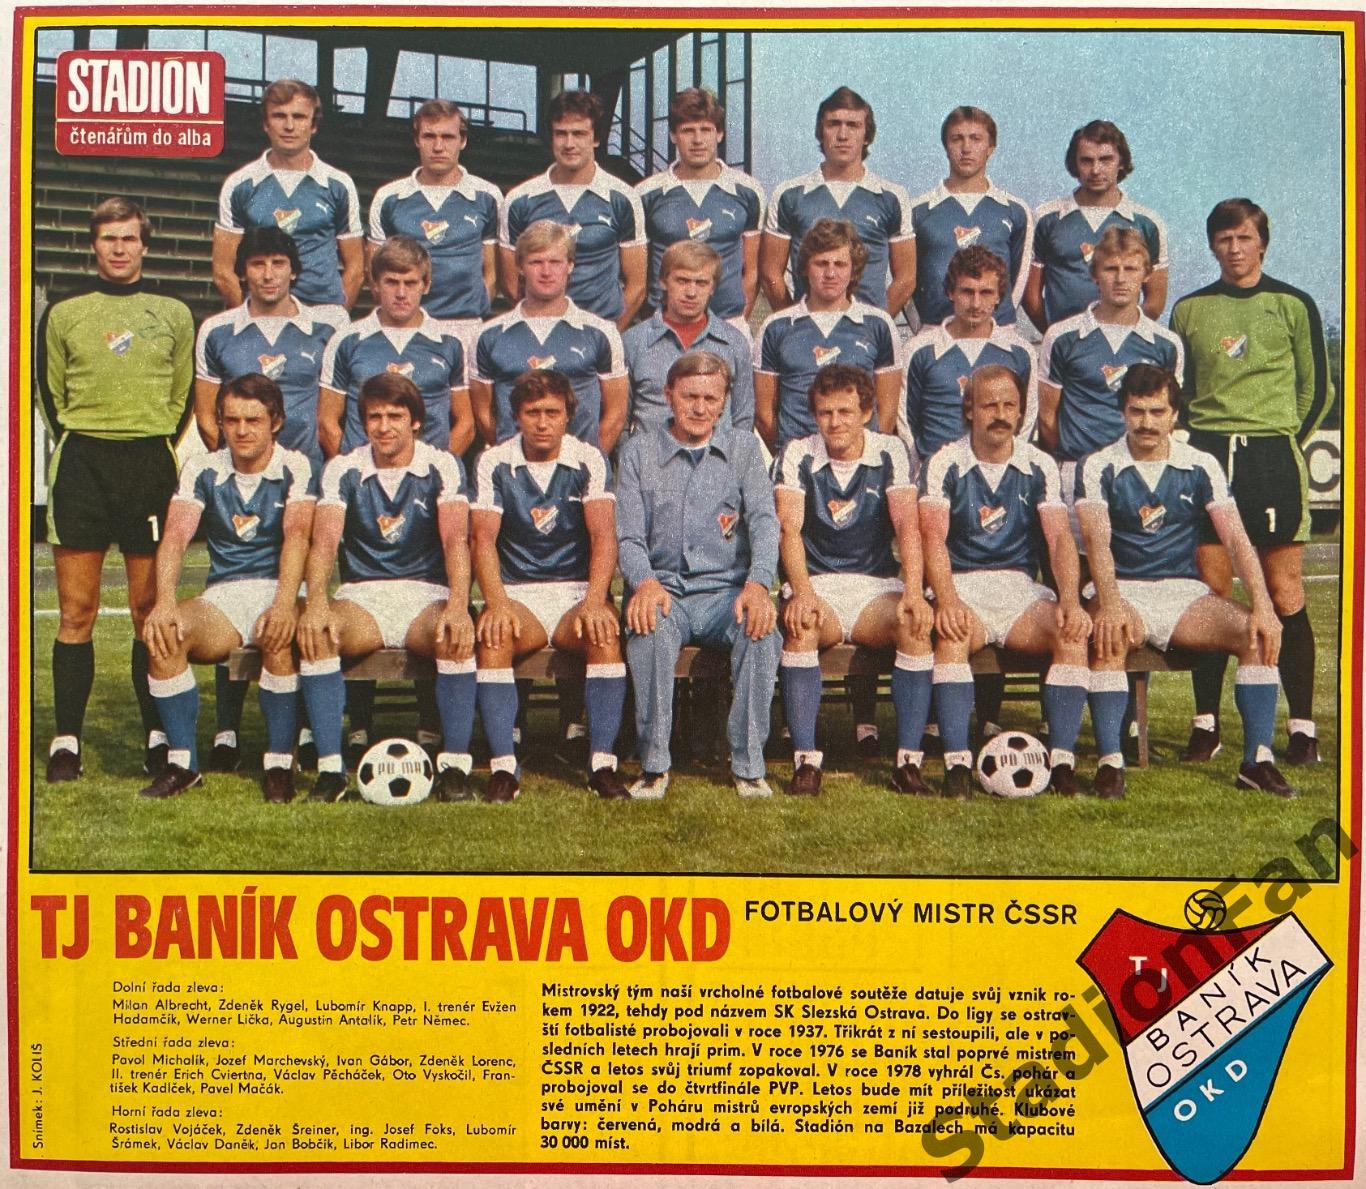 Постер из журнала Stadion (Стадион) - Banik Ostrava ,1980.